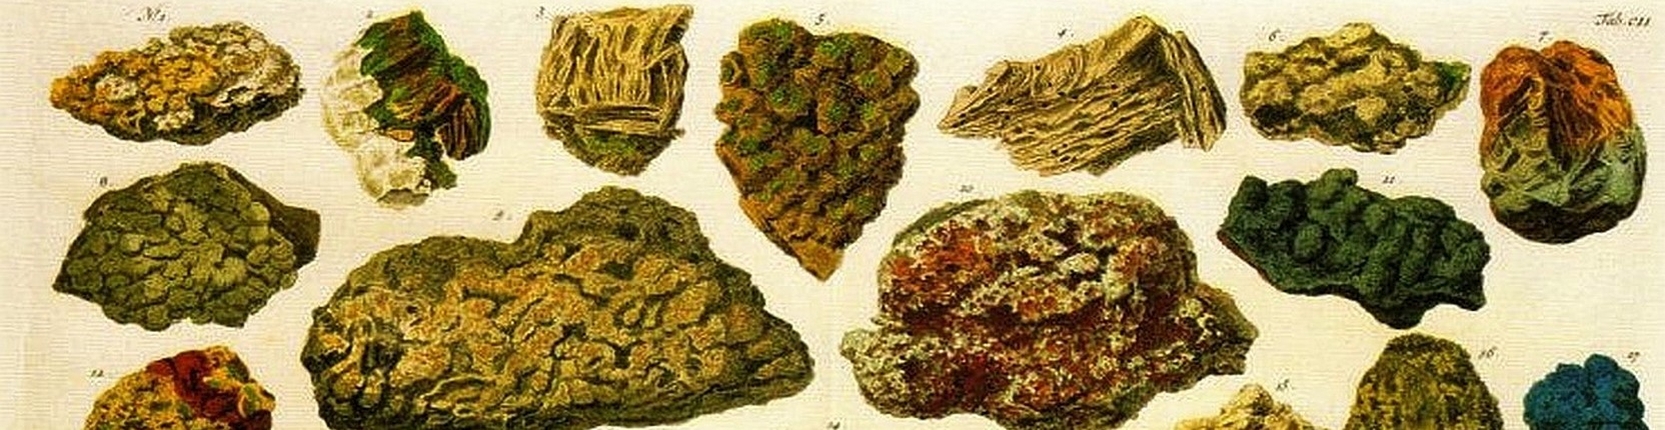 mineralsb.jpg